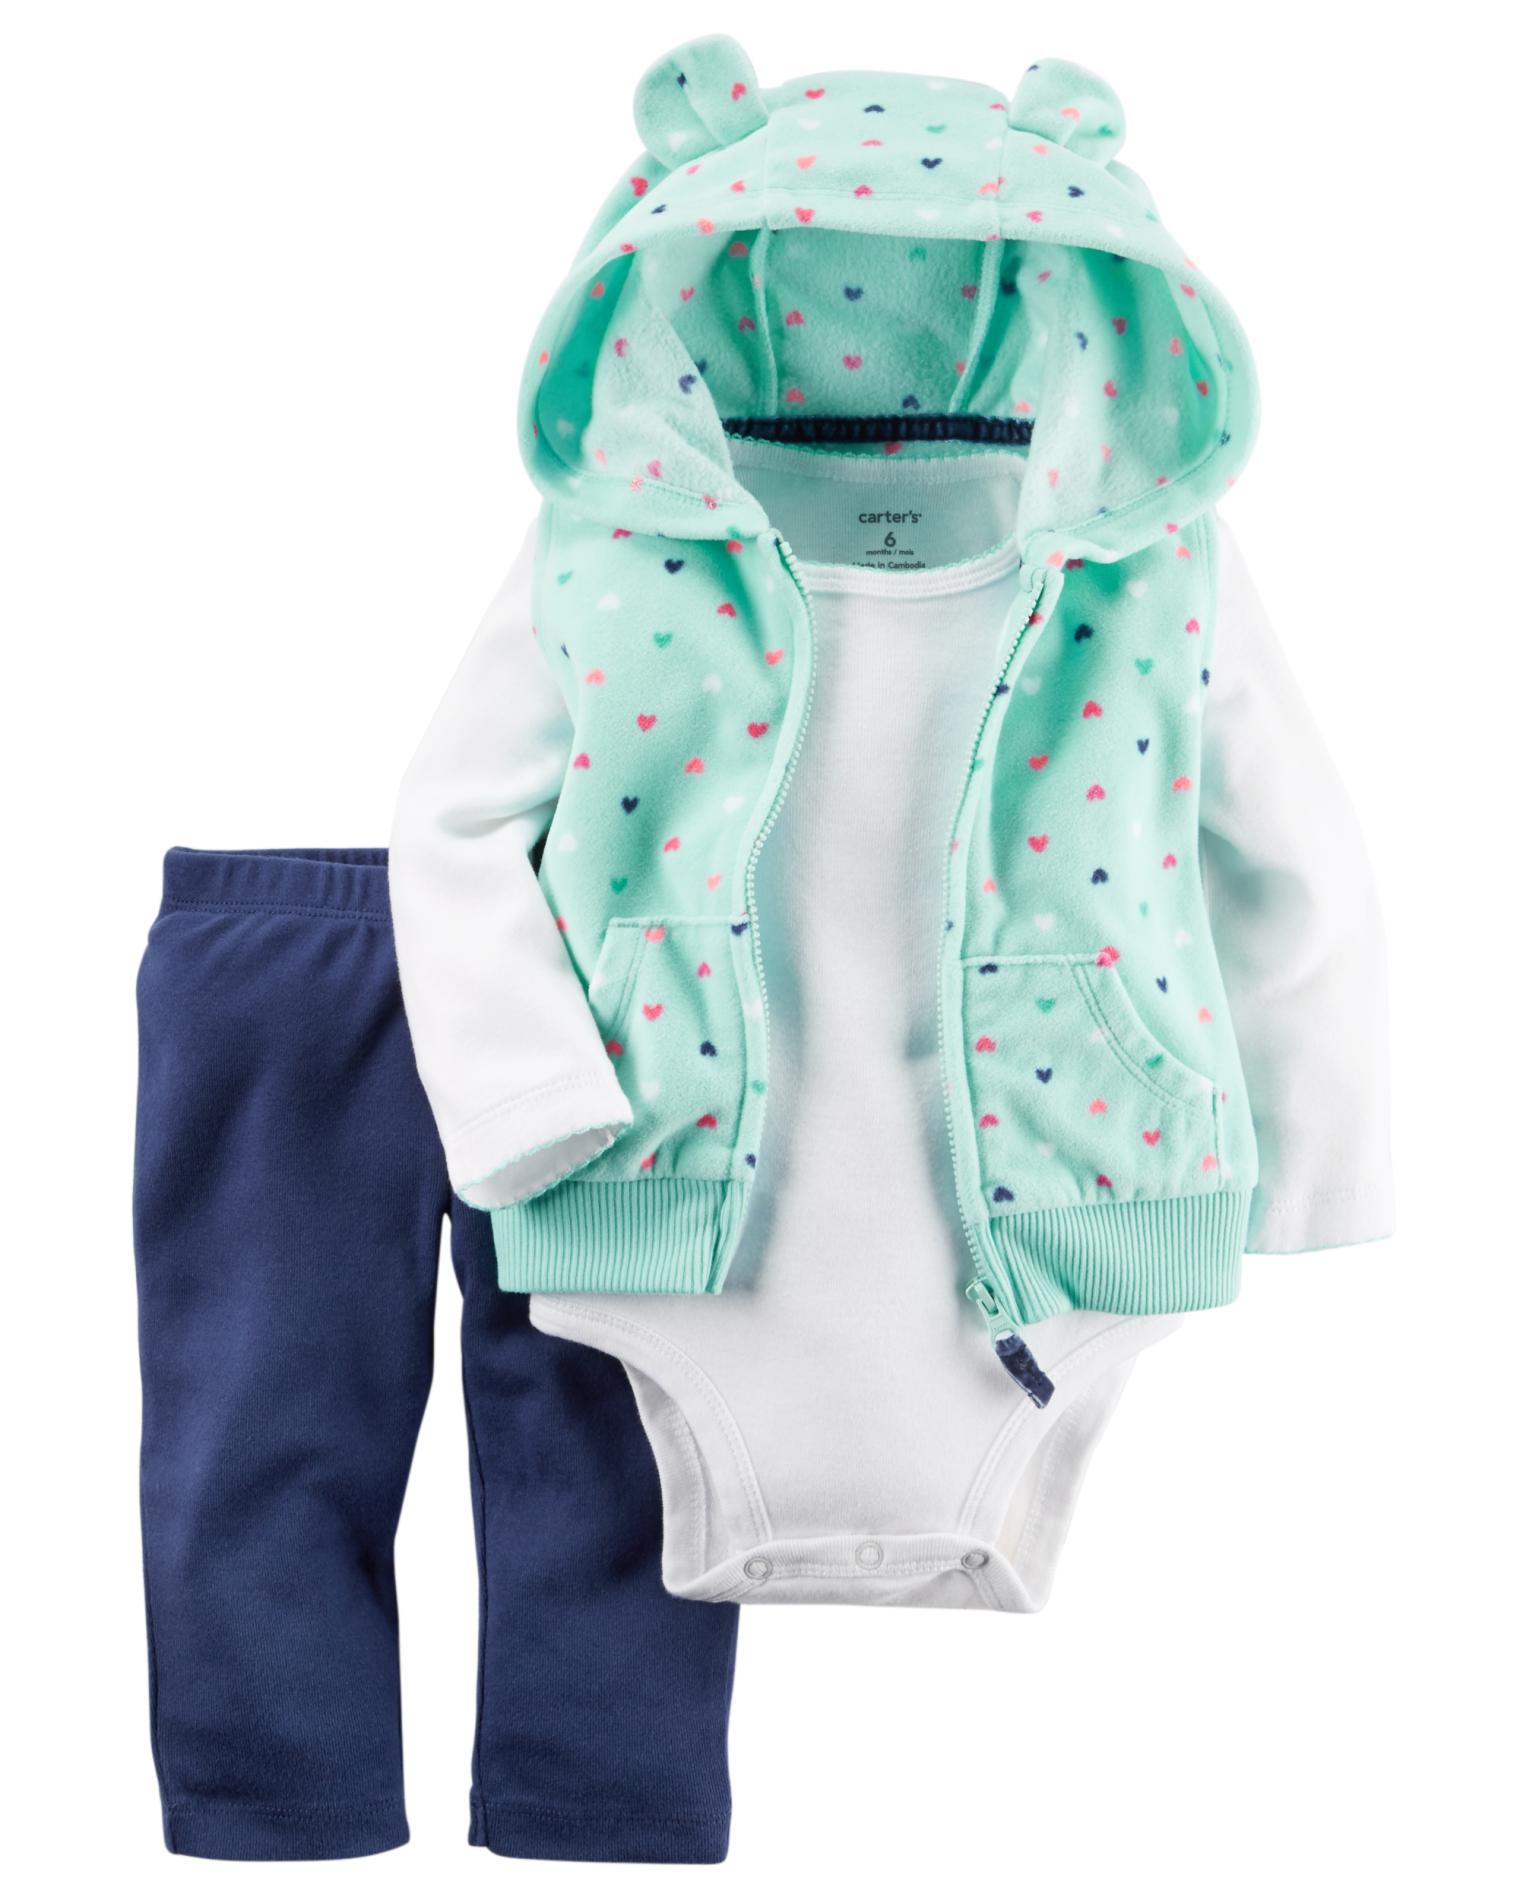 Carter's Newborn & Infant Girls' Hooded Vest, Bodysuit & Leggings - Hearts